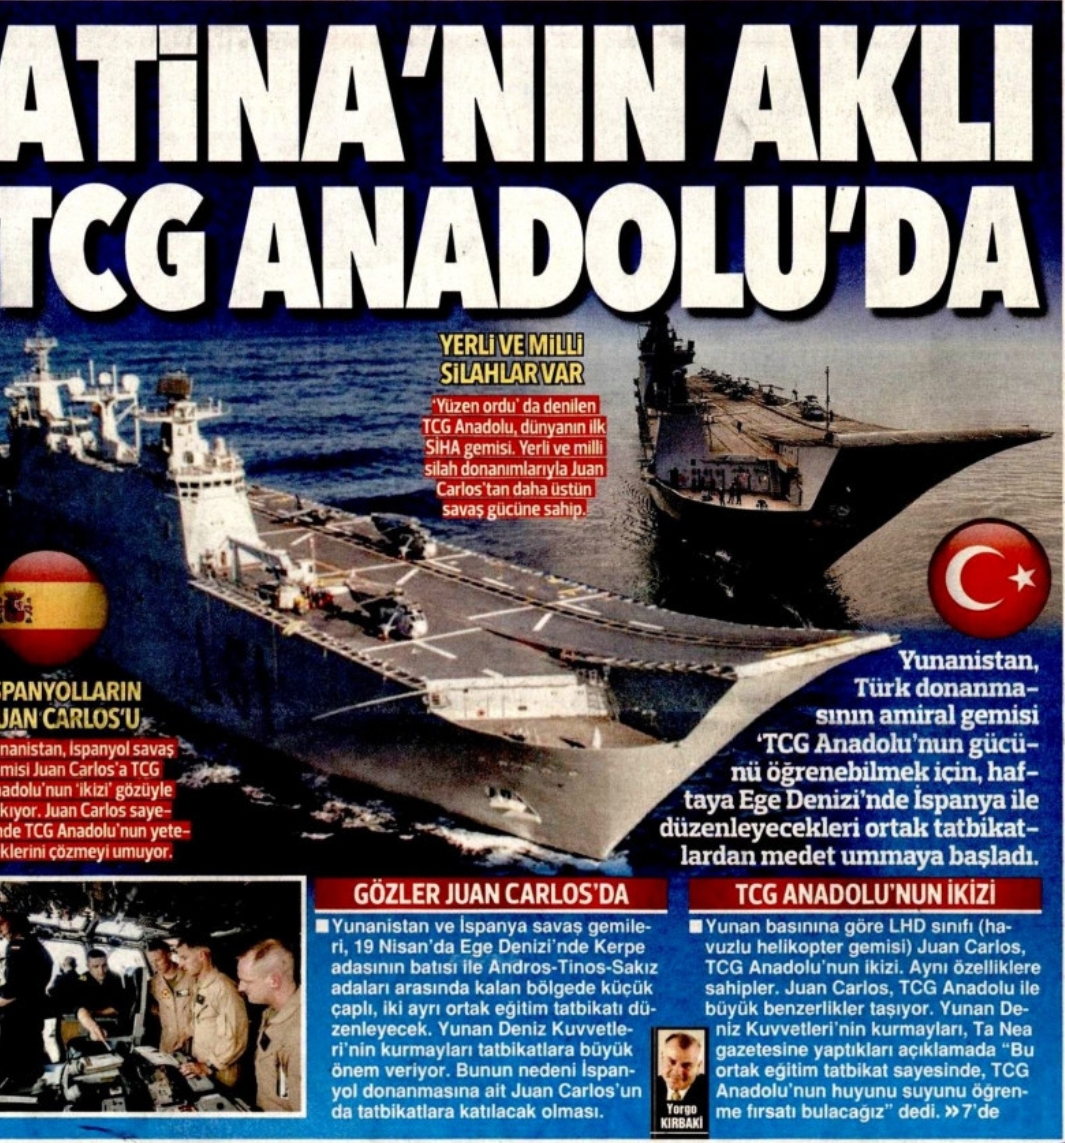 τουρκικά μμε: το μυαλό της αθήνας στο μίνι αεροπλανοφόρο tcg anadolu